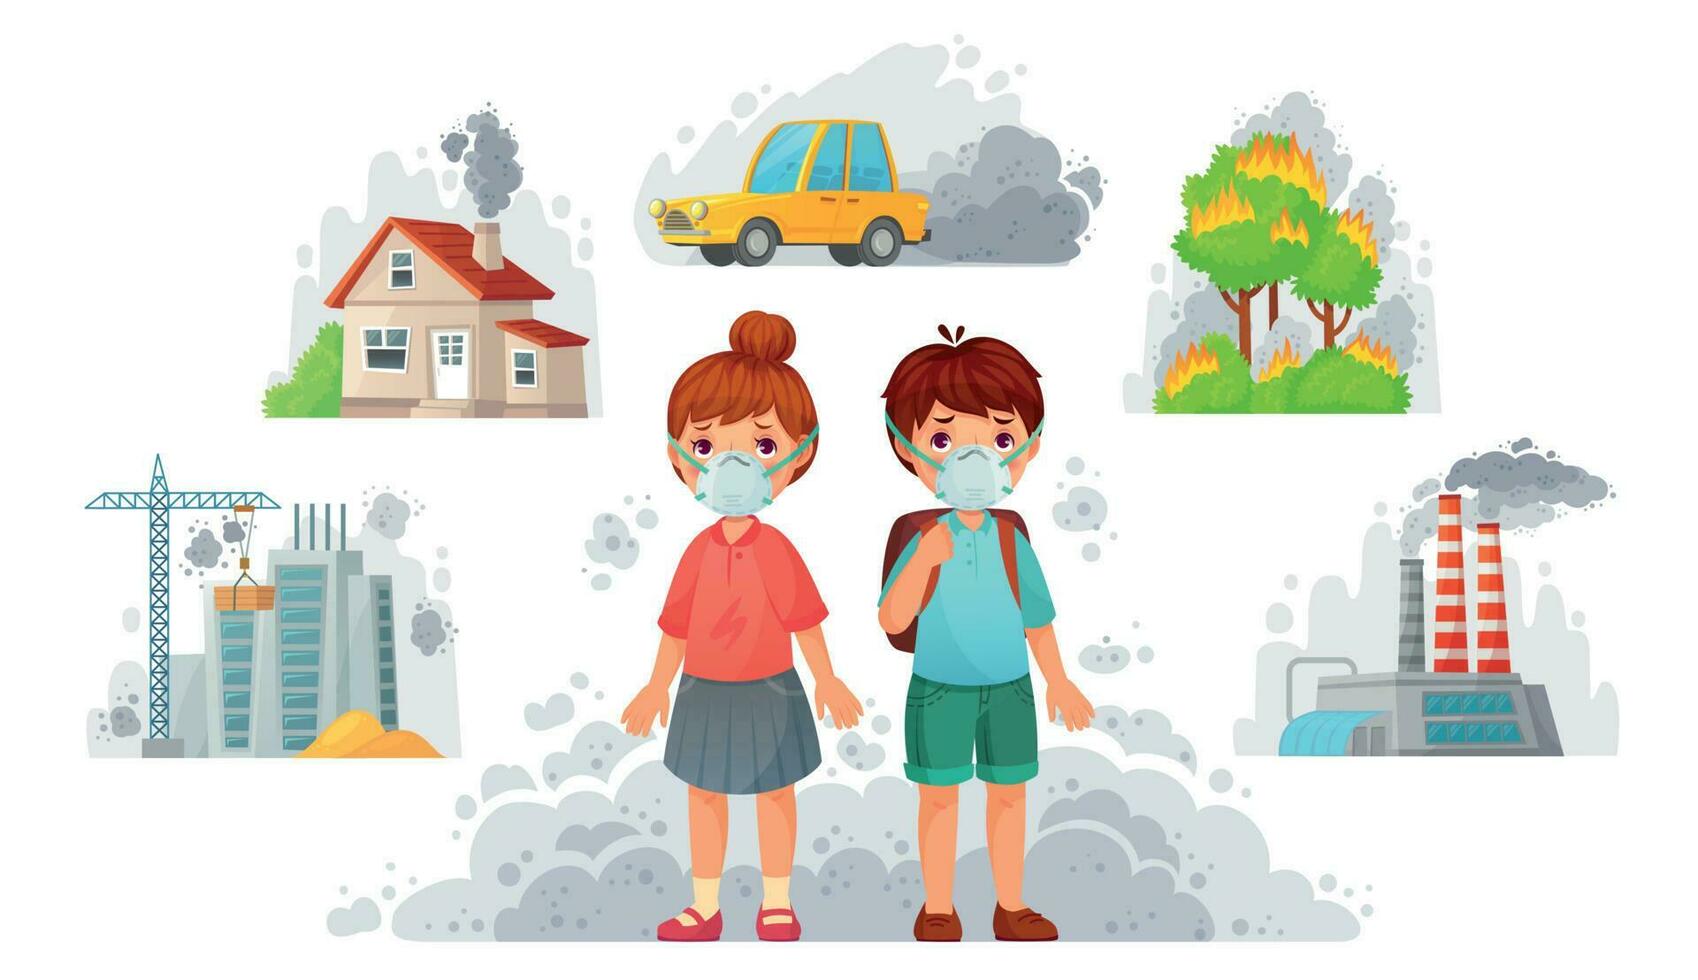 Kinder im n95 Masken. schmutzig Umgebung Schutz, Gesicht Maske schützen von Straße Rauch und Uhr2. 5 Vektor Illustration